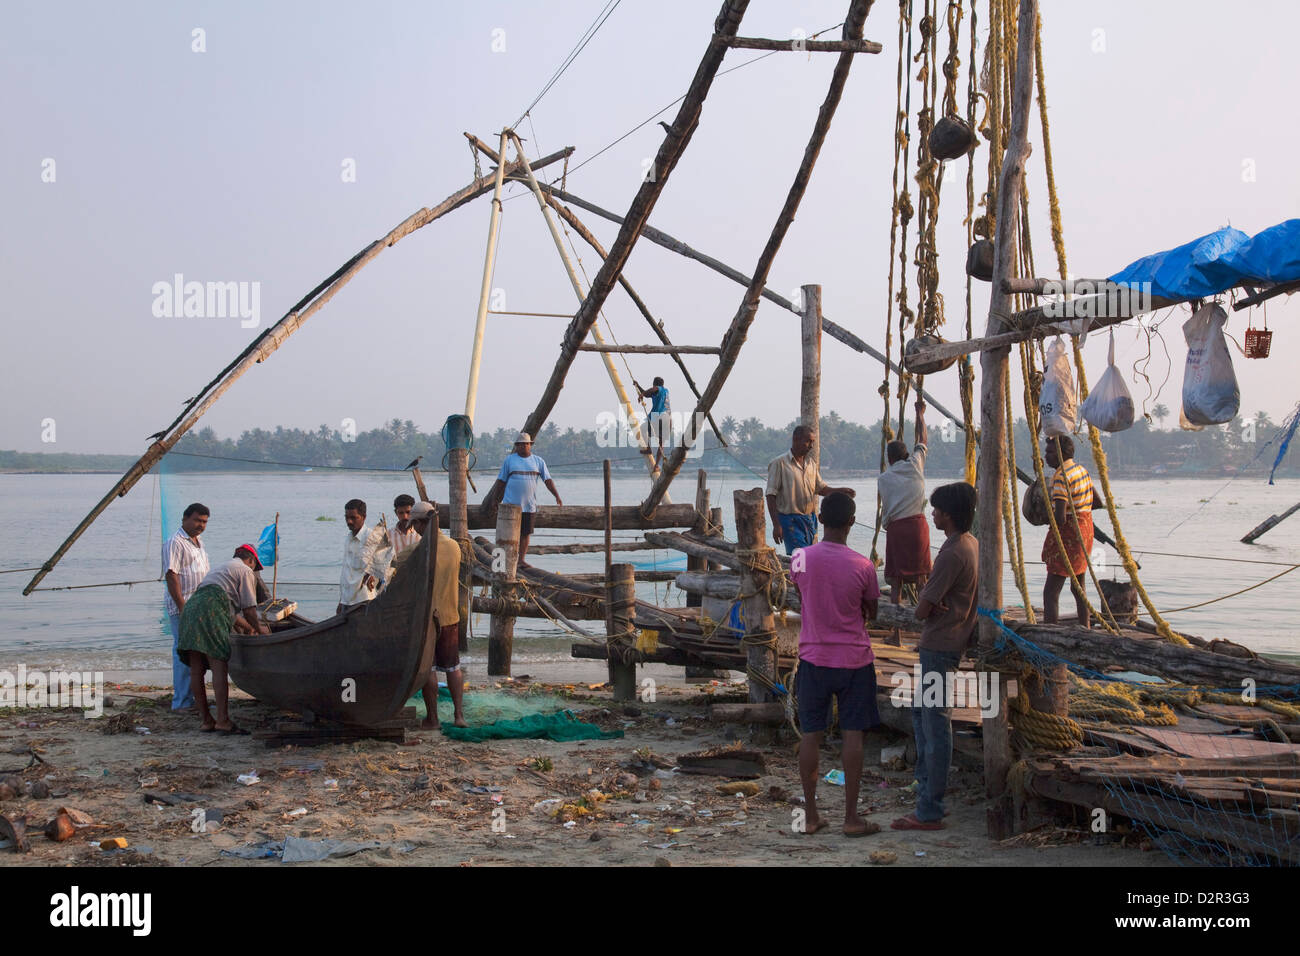 Les pêcheurs préparer bateau traditionnel et filet de pêche chinois en face de l'eau à Kochi (Cochin), Kerala, Inde, Asie Banque D'Images